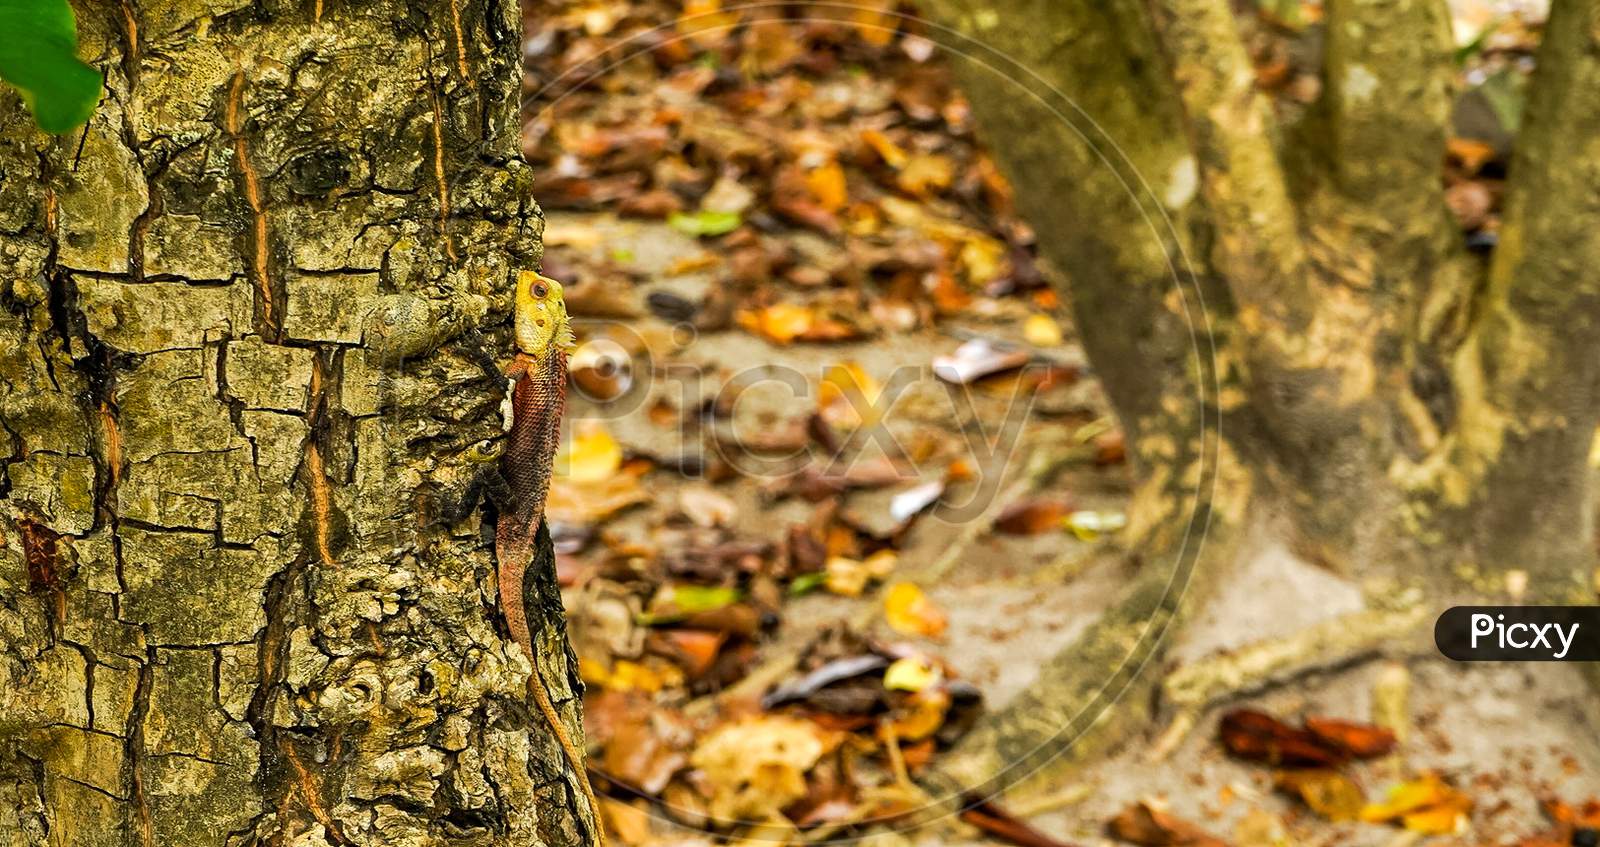 Lizard in the tree in Maldives